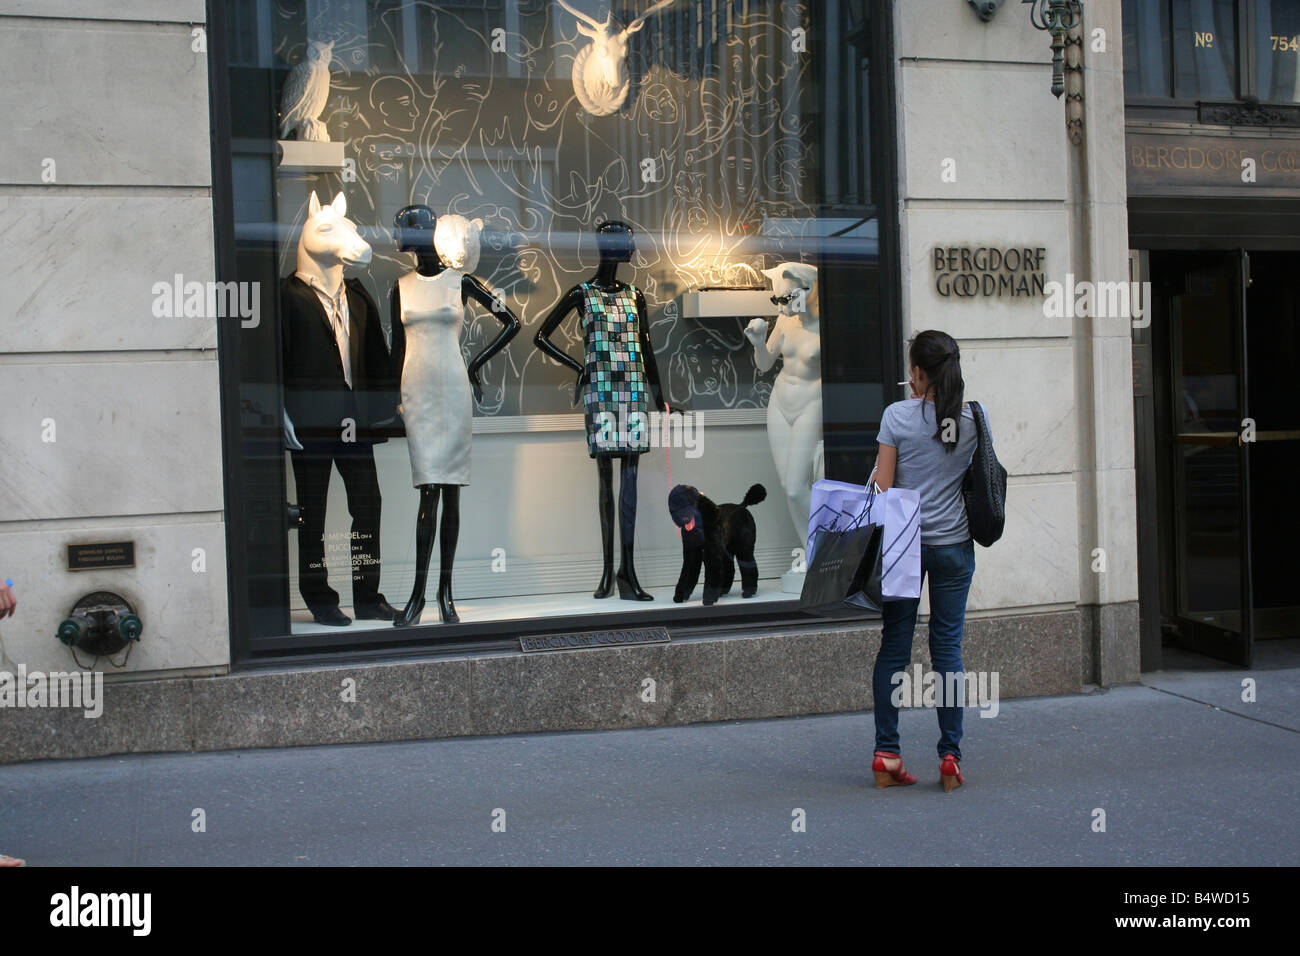 Eine Frau Fenster einkaufen bei Bergdorf Goodman, New York, NY. Stockfoto